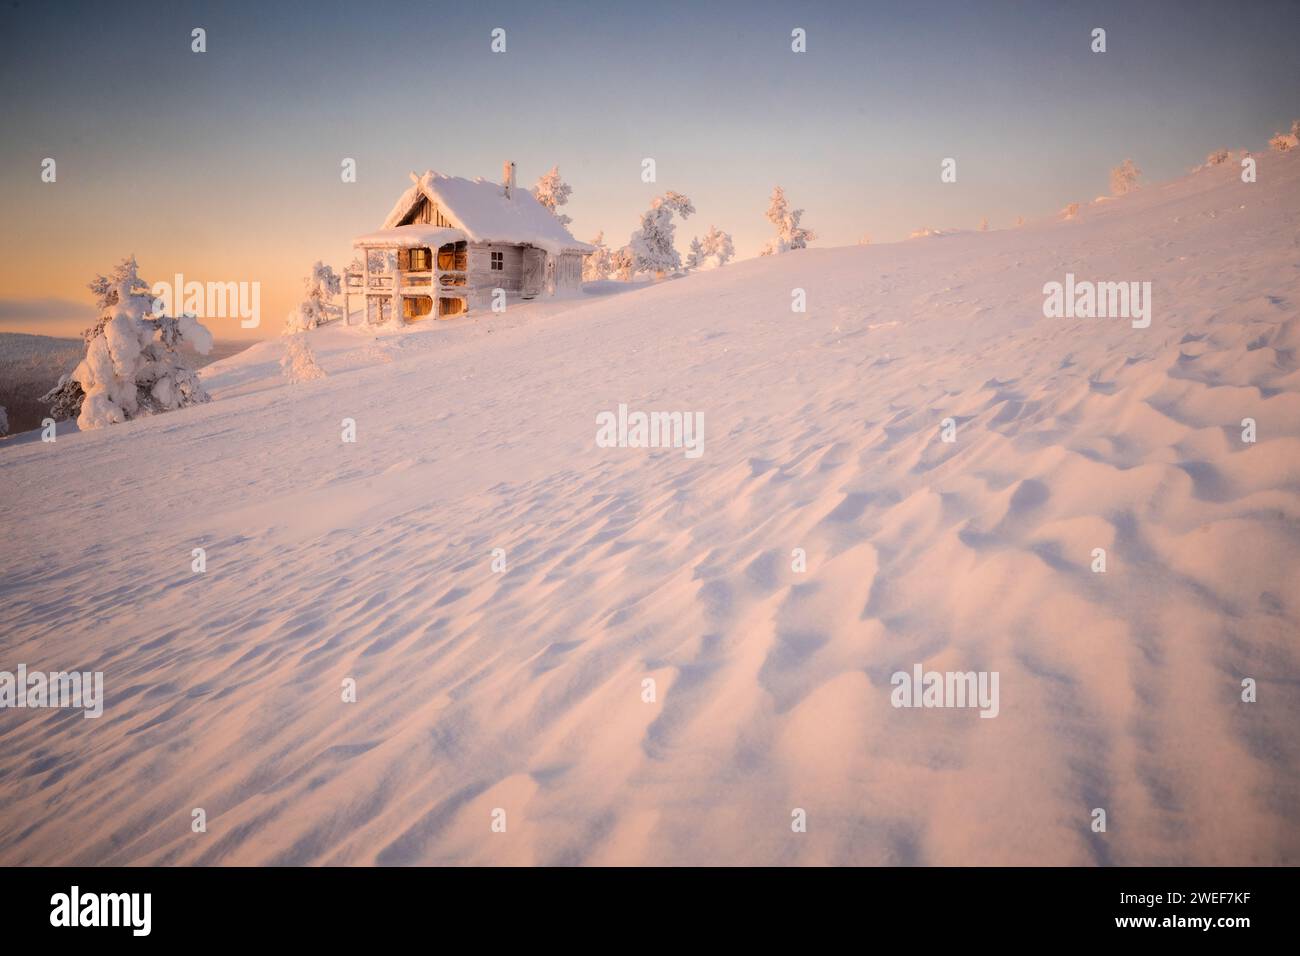 La Santa Cabin su Levi cadde a Sirkka, Finlandia, lapponia, al tramonto in inverno. La cabina di Babbo Natale a Levi, è stata realizzata per il film Christmas Story Joulutari Foto Stock